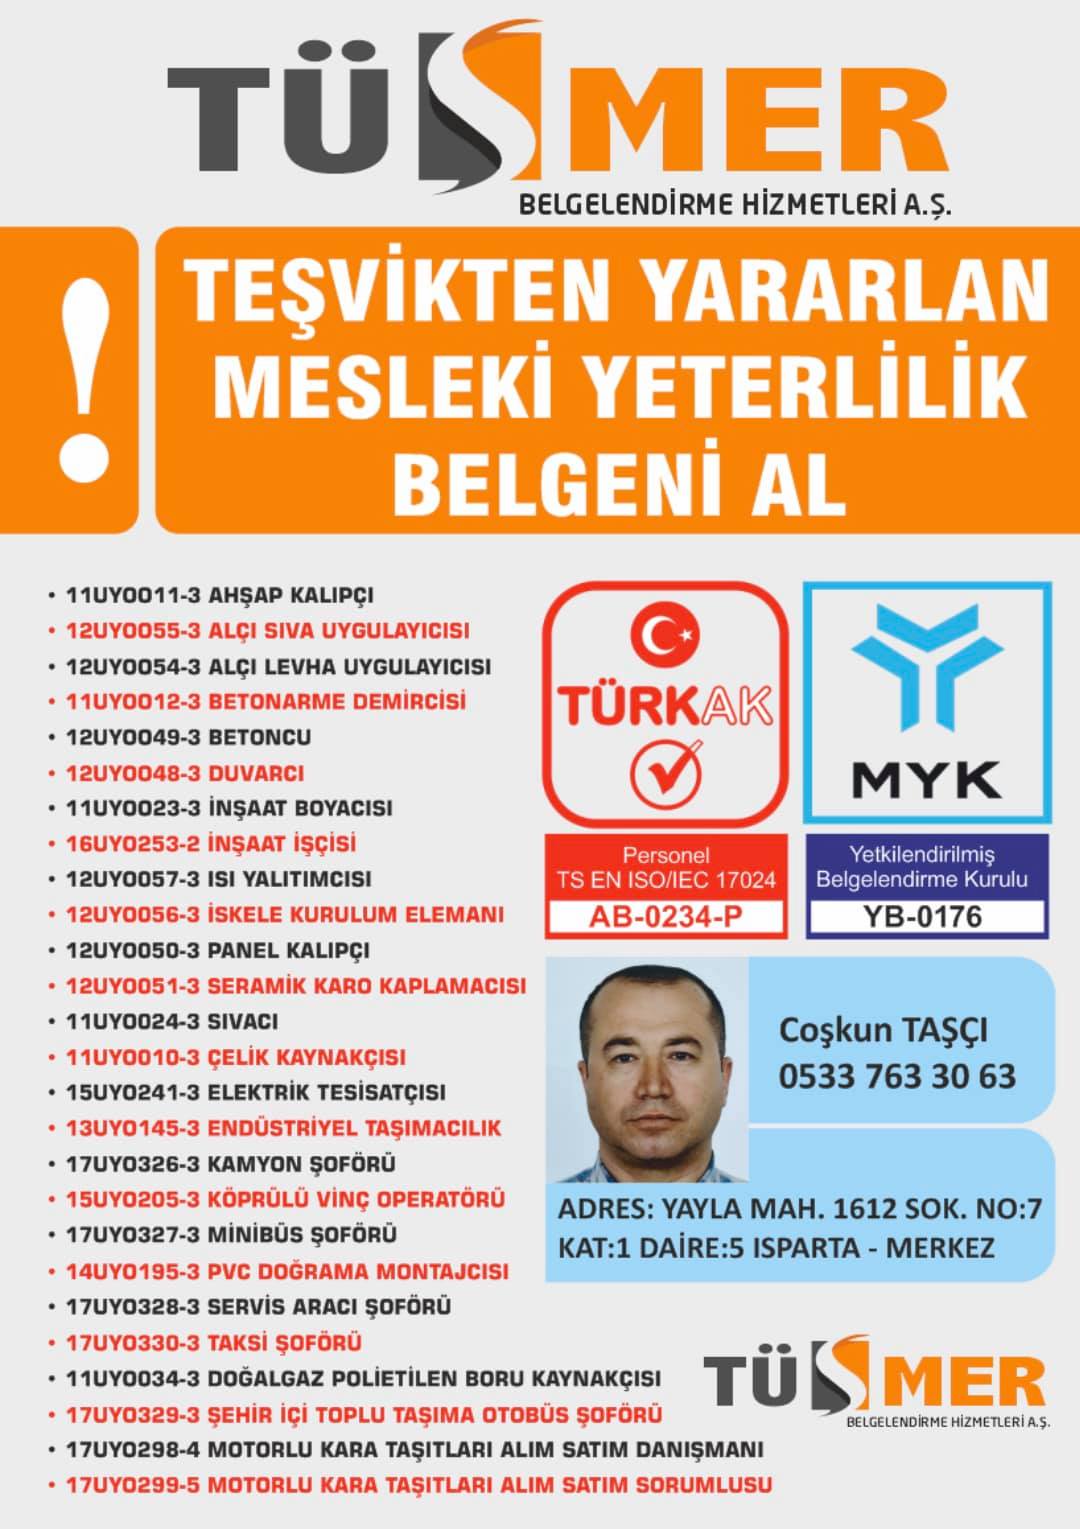 MYK MESLEKİ YETERLİLİK BELGESİ BedrettinBeyoğlu İstanbul